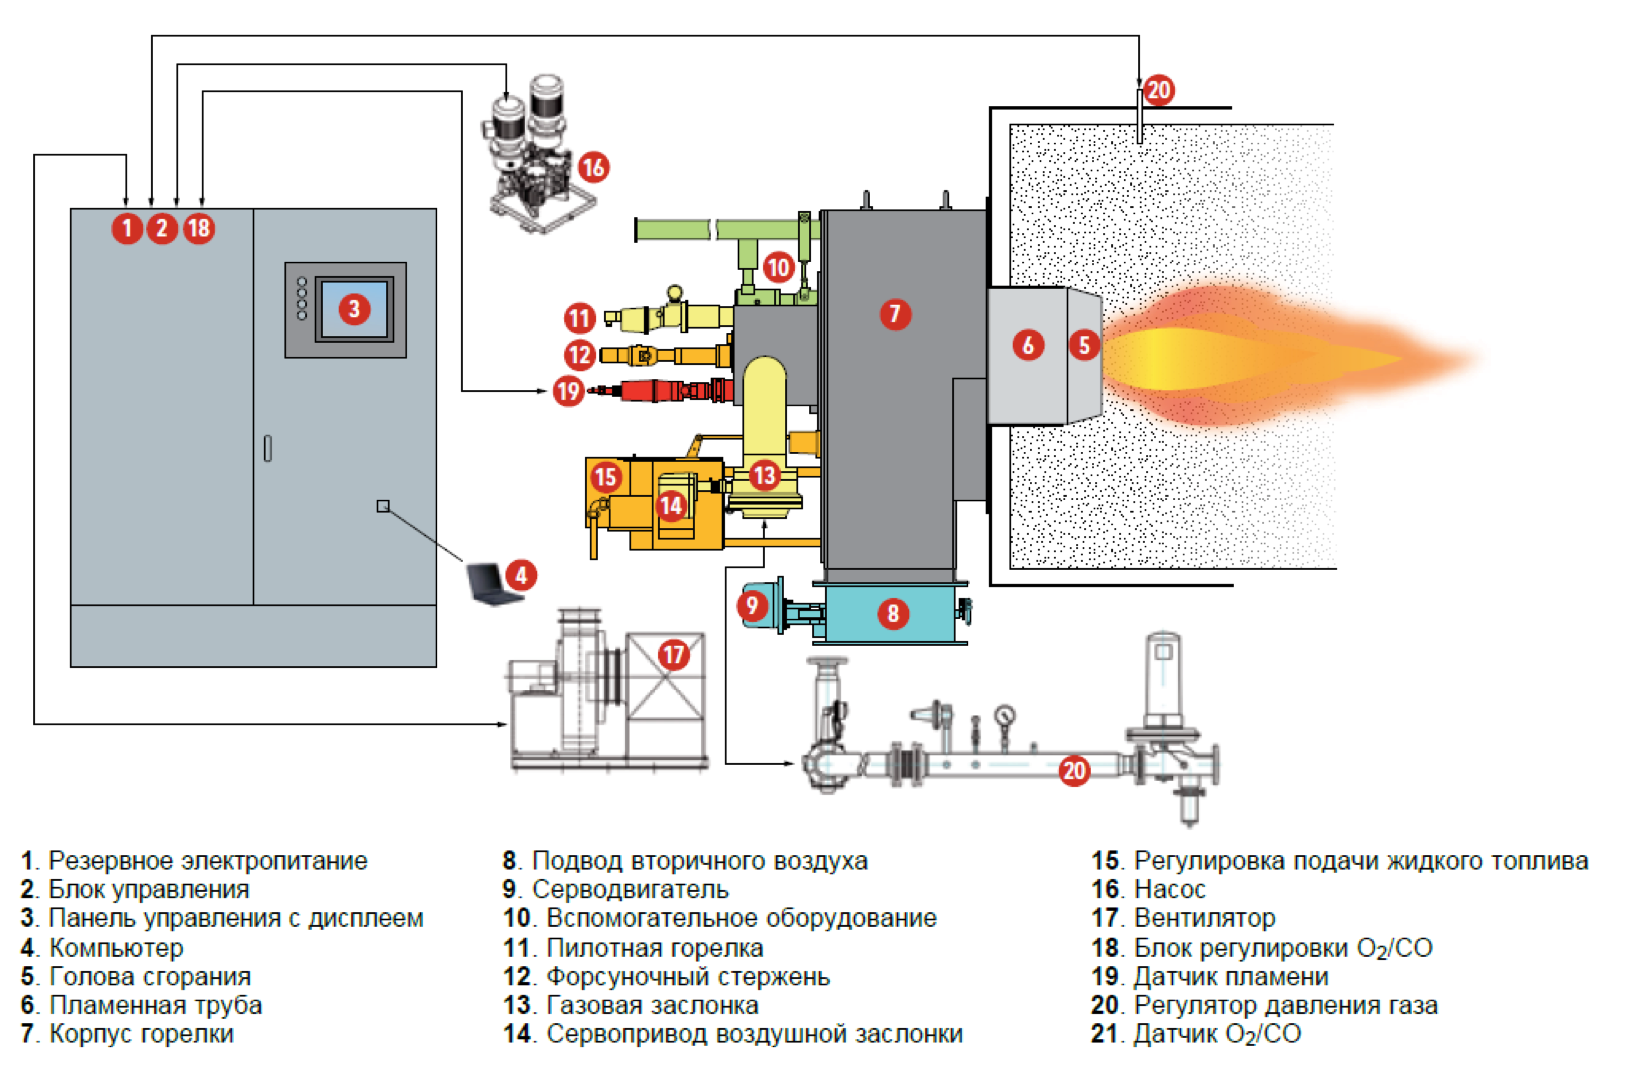 электронная система контроля работы горелки